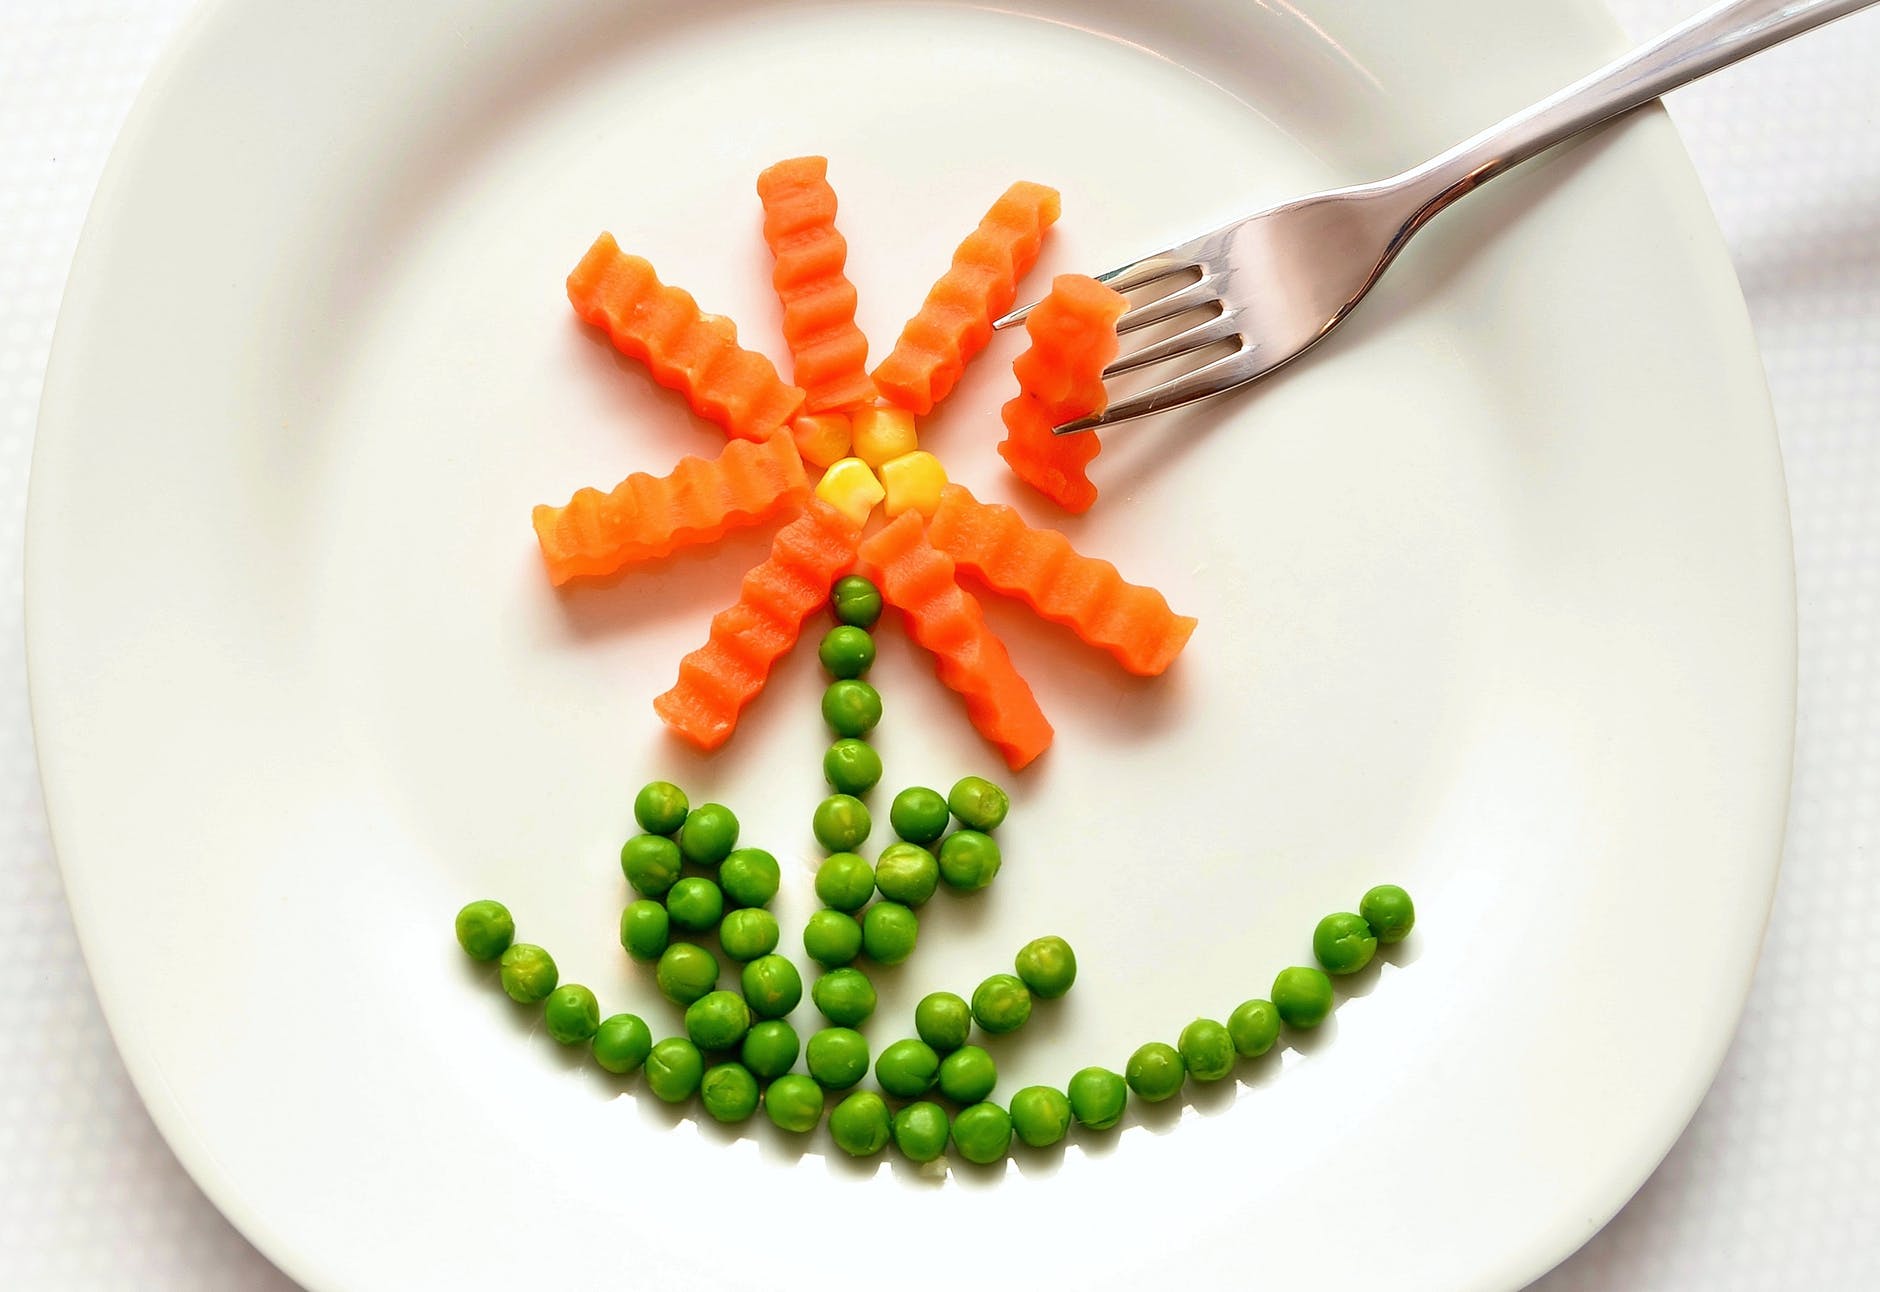 eat-carrots-peas-healthy-45218.jpeg